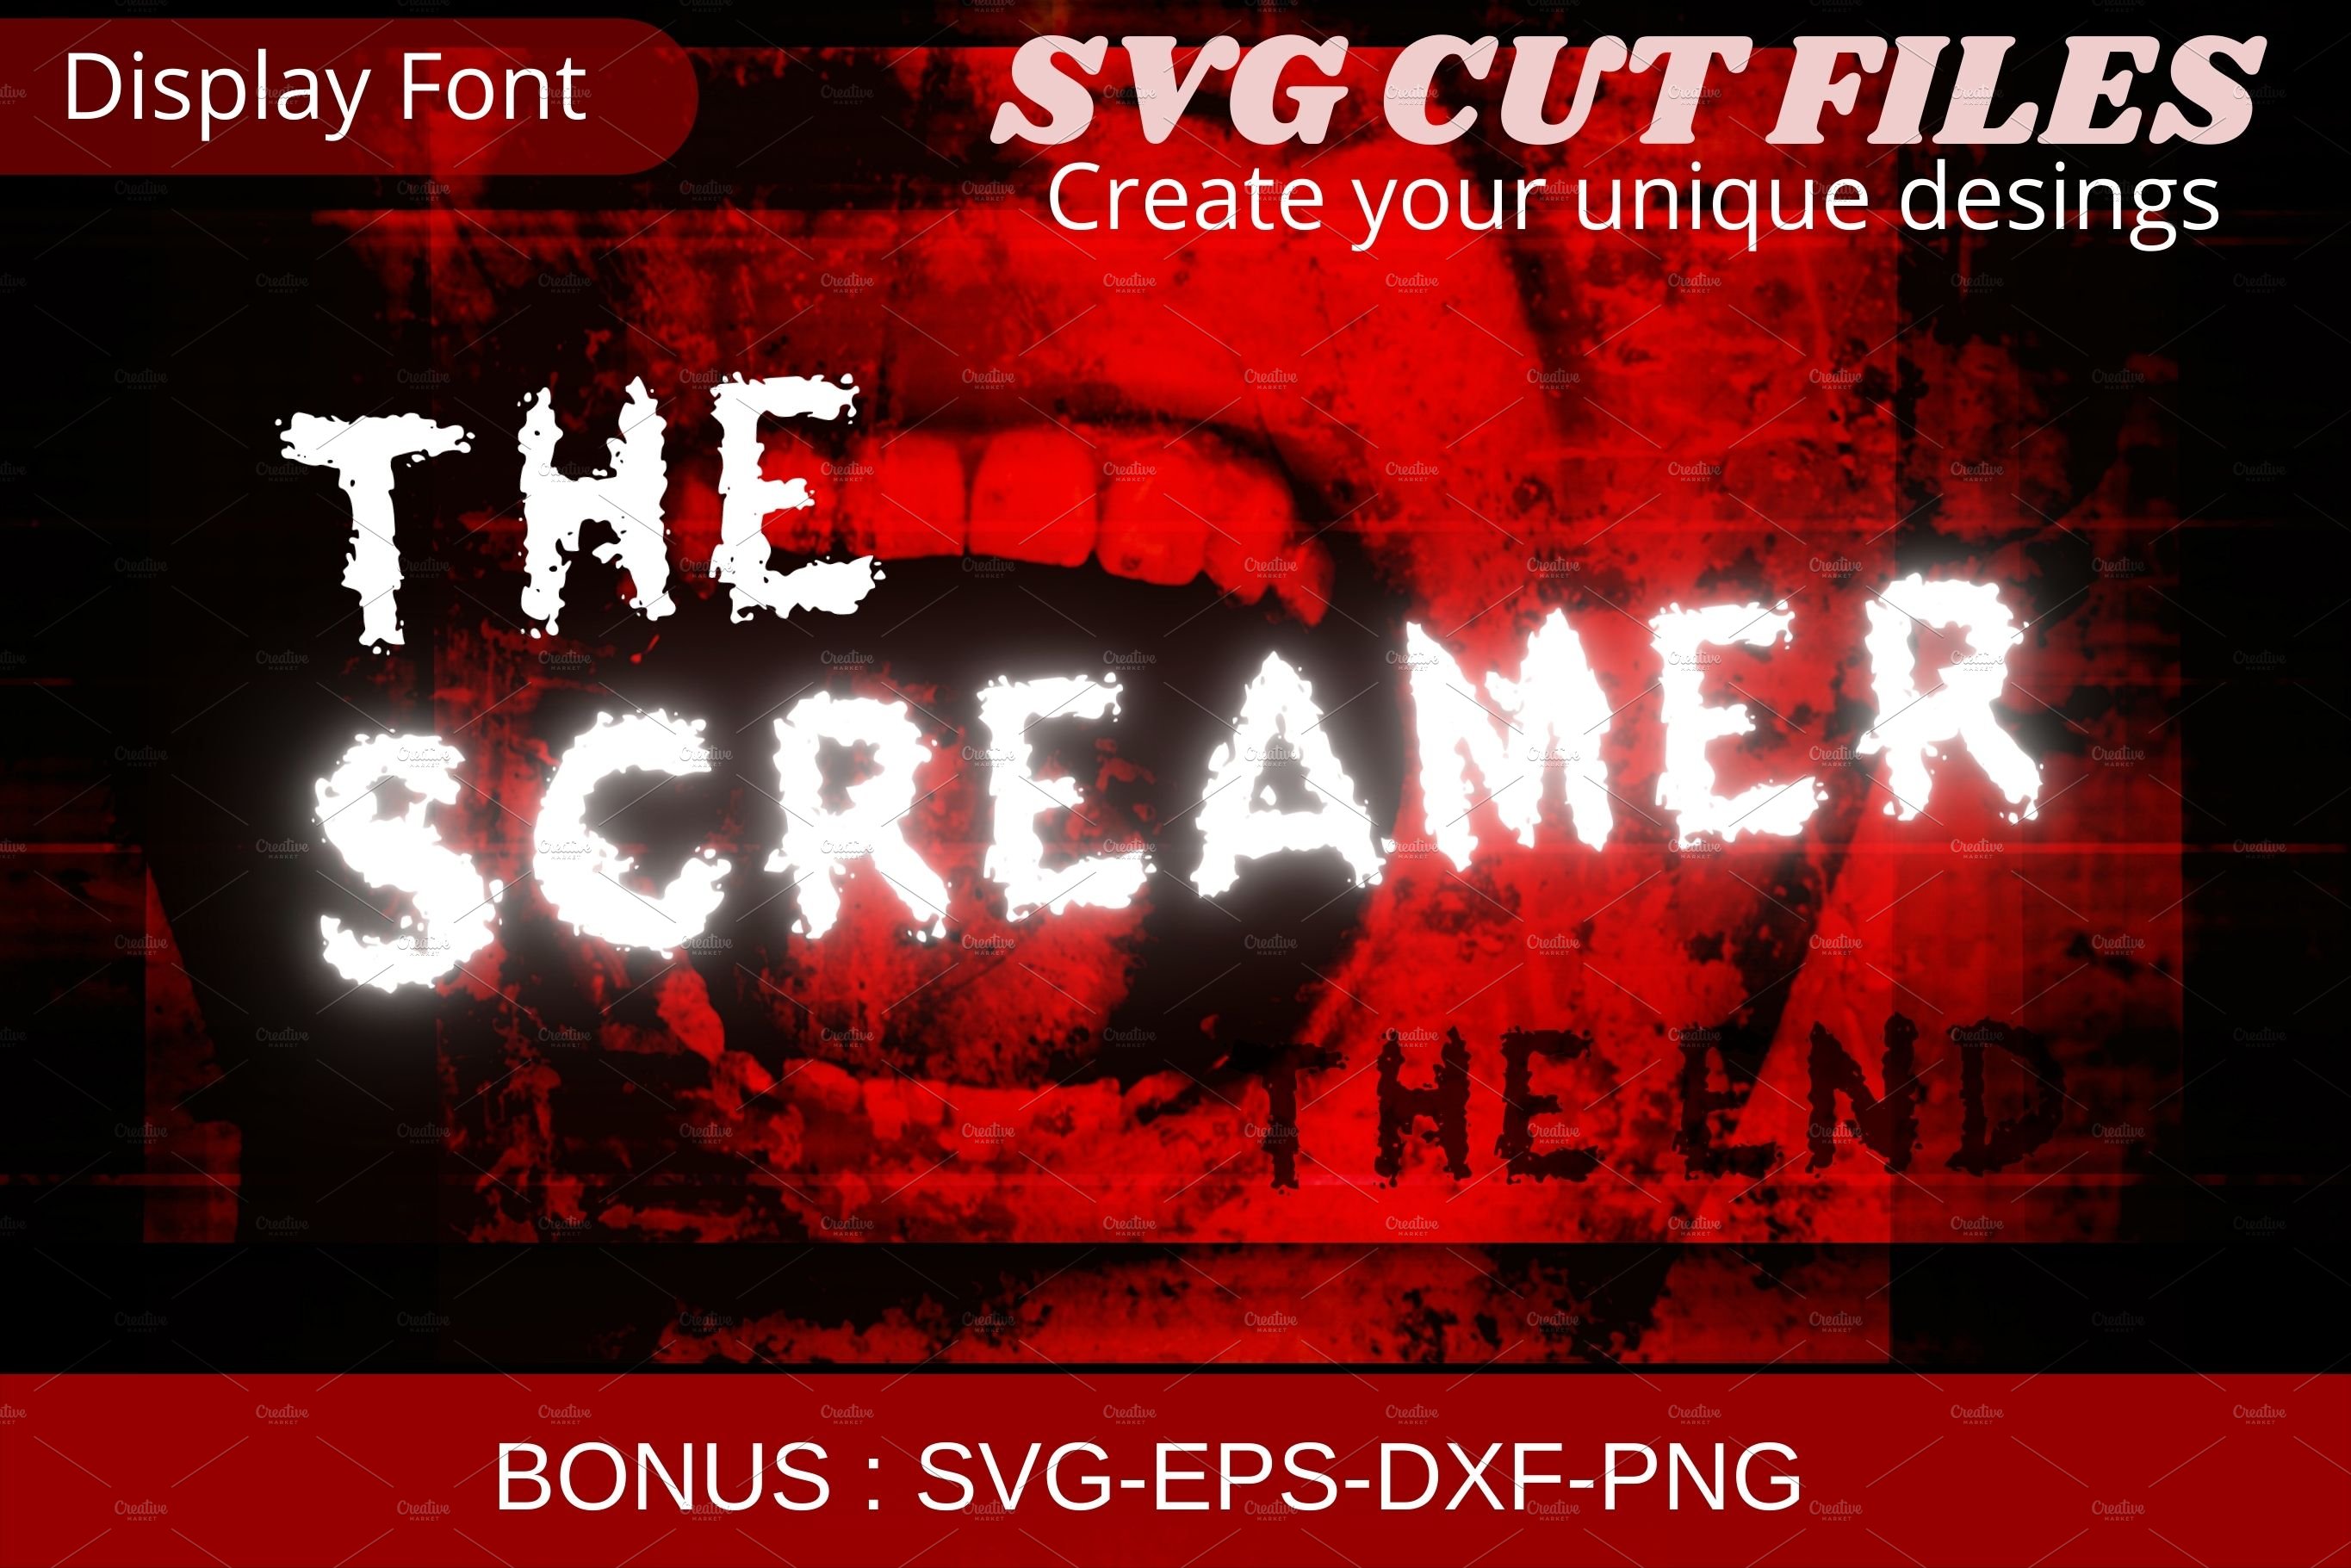 The Screamer Font, SVG font cover image.